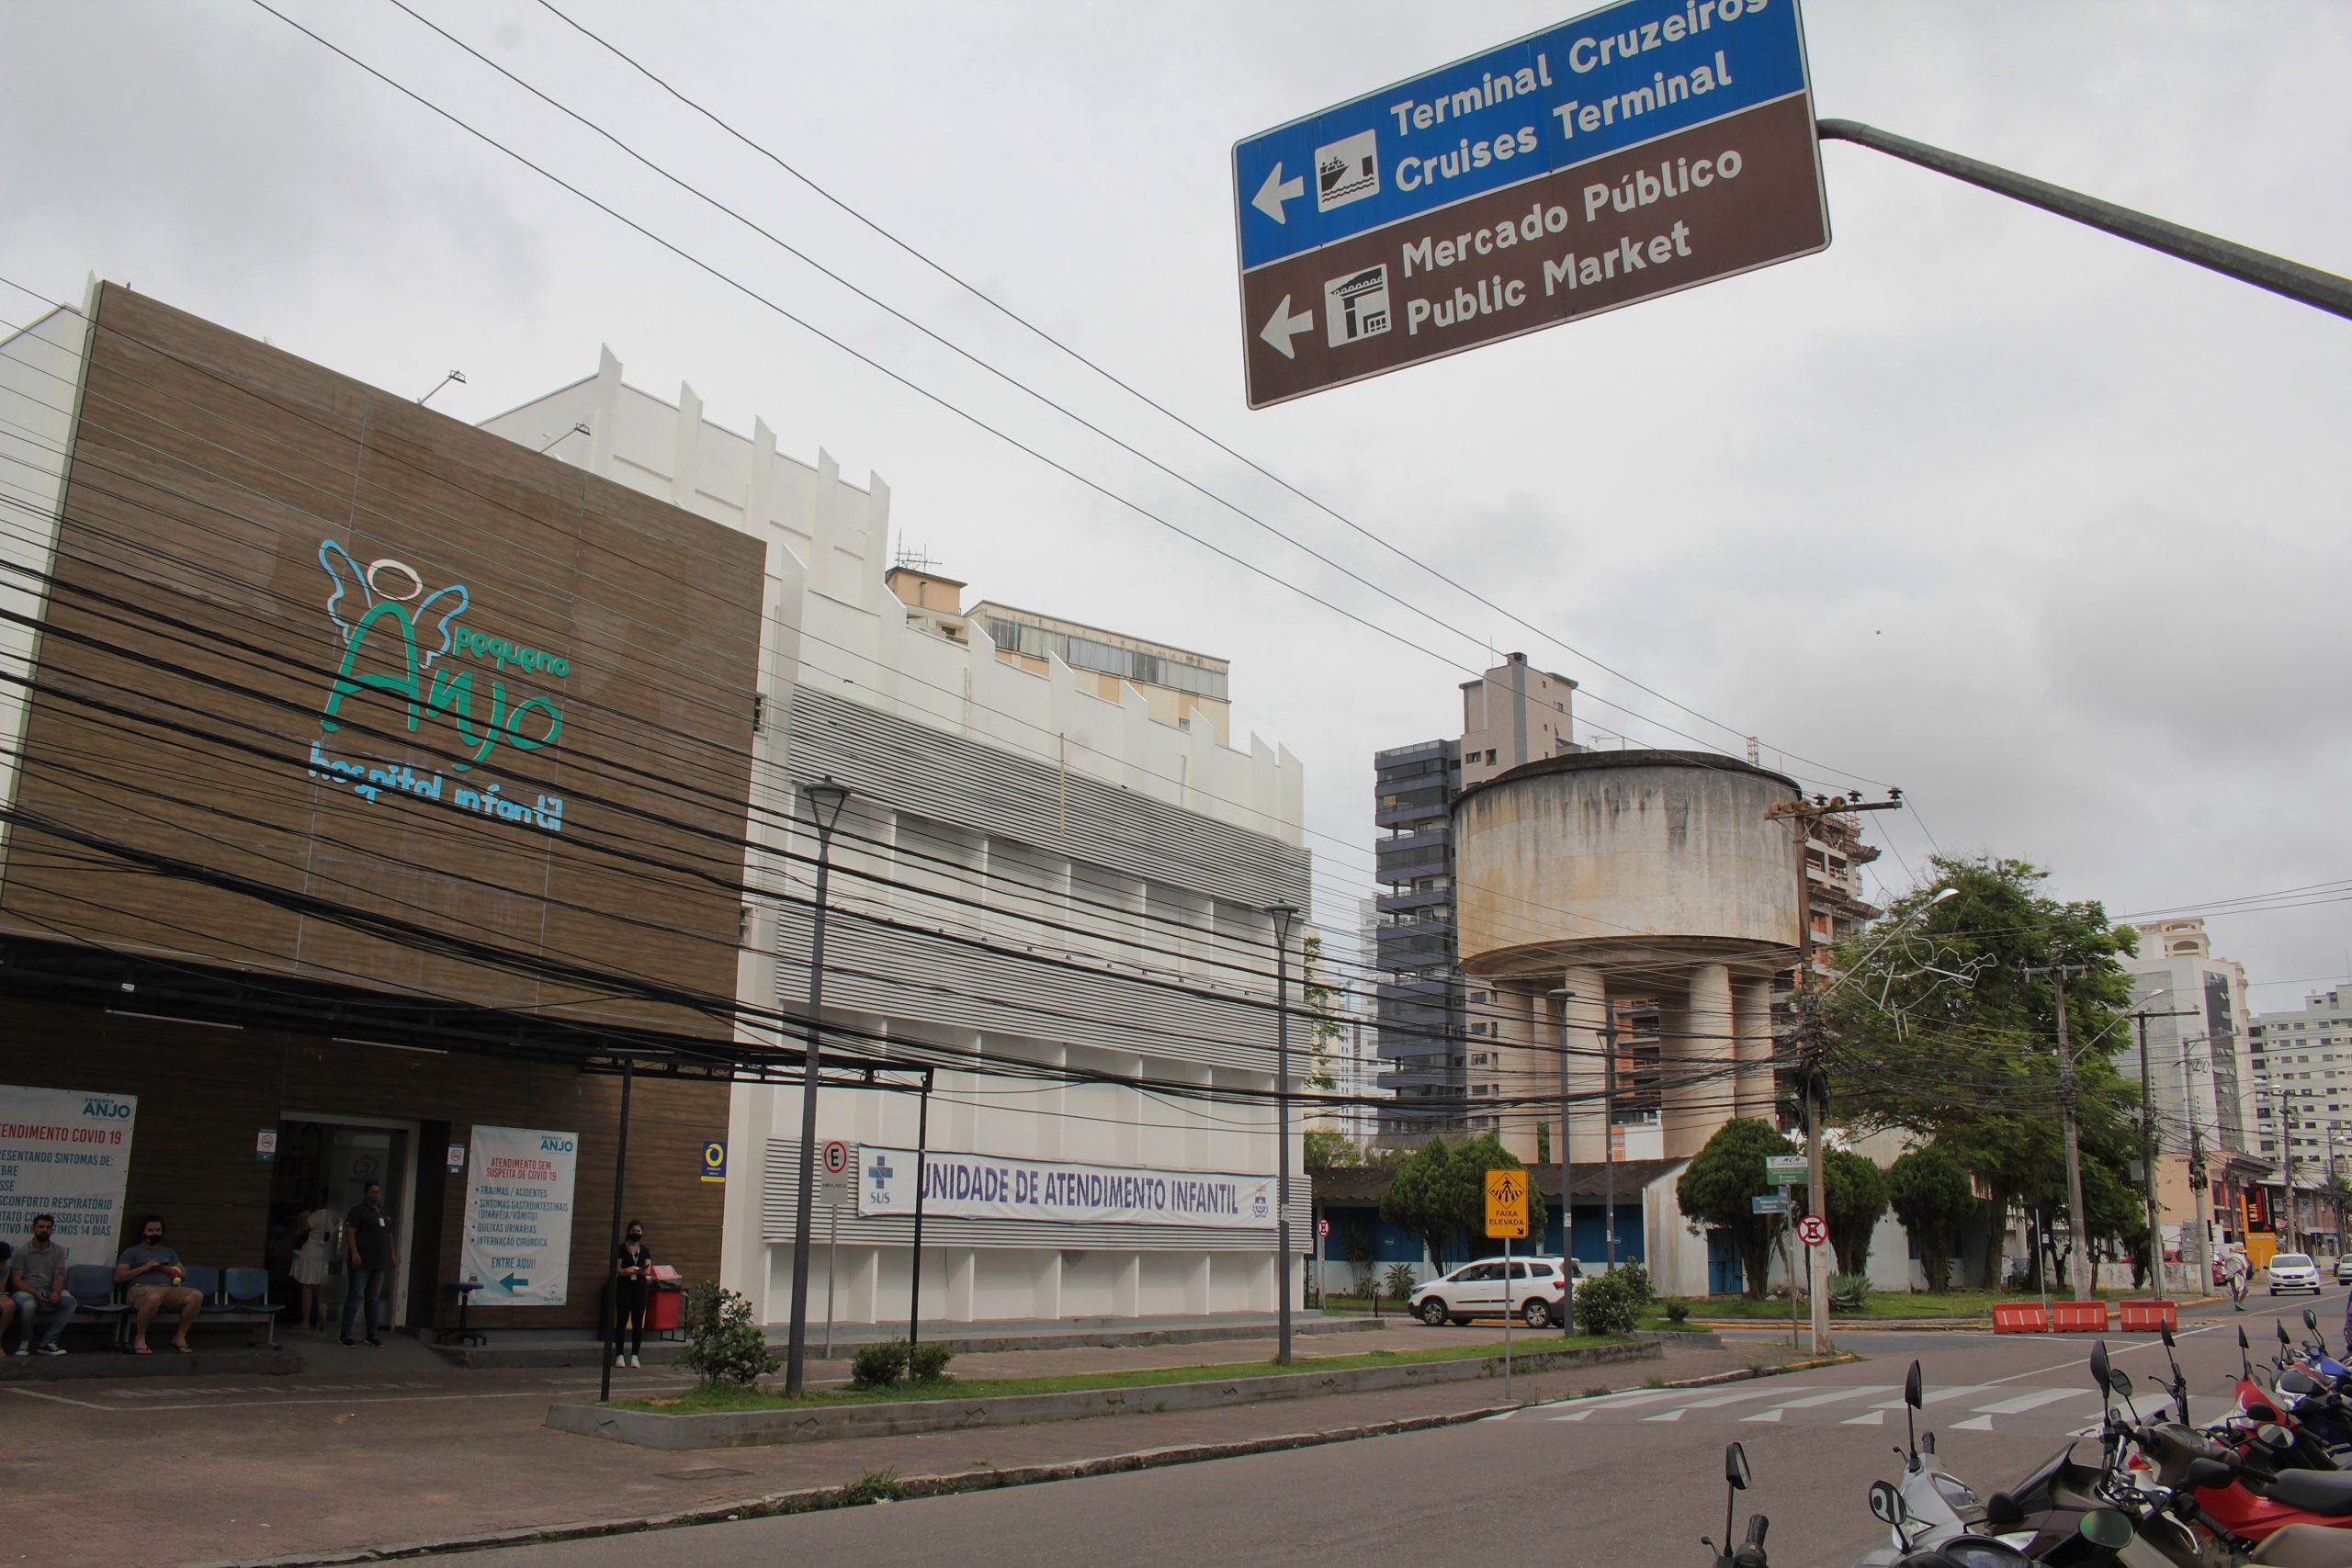 Semasa repassa imóvel para ampliação do Hospital Infantil no Centro de Itajaí